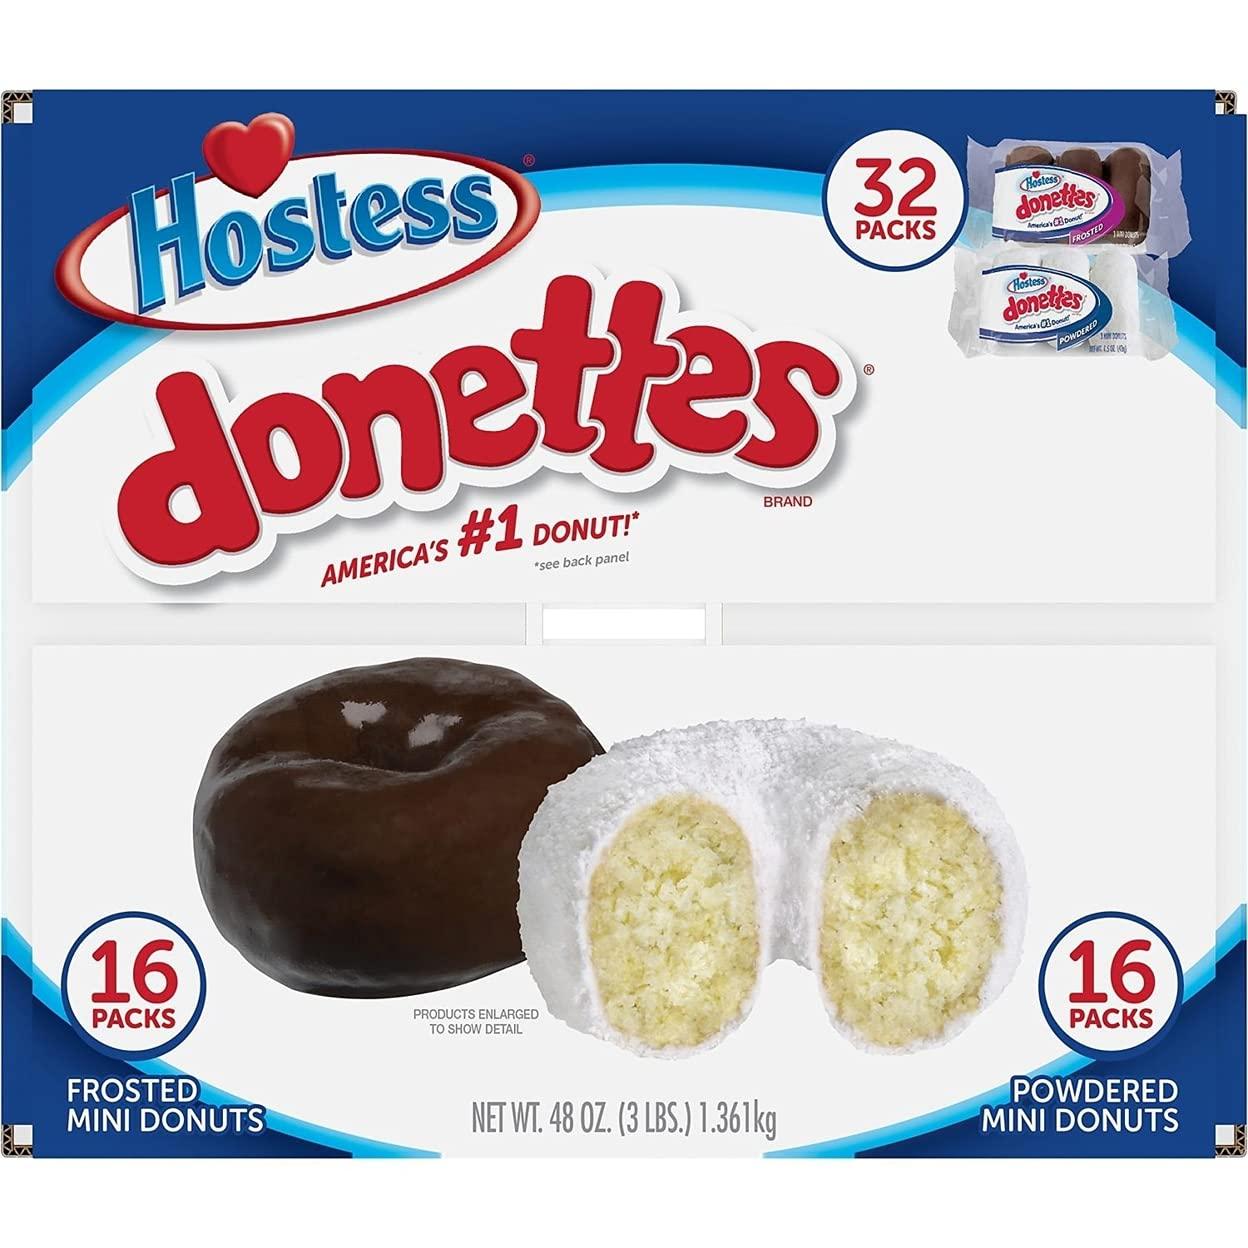 hostess powdered donuts